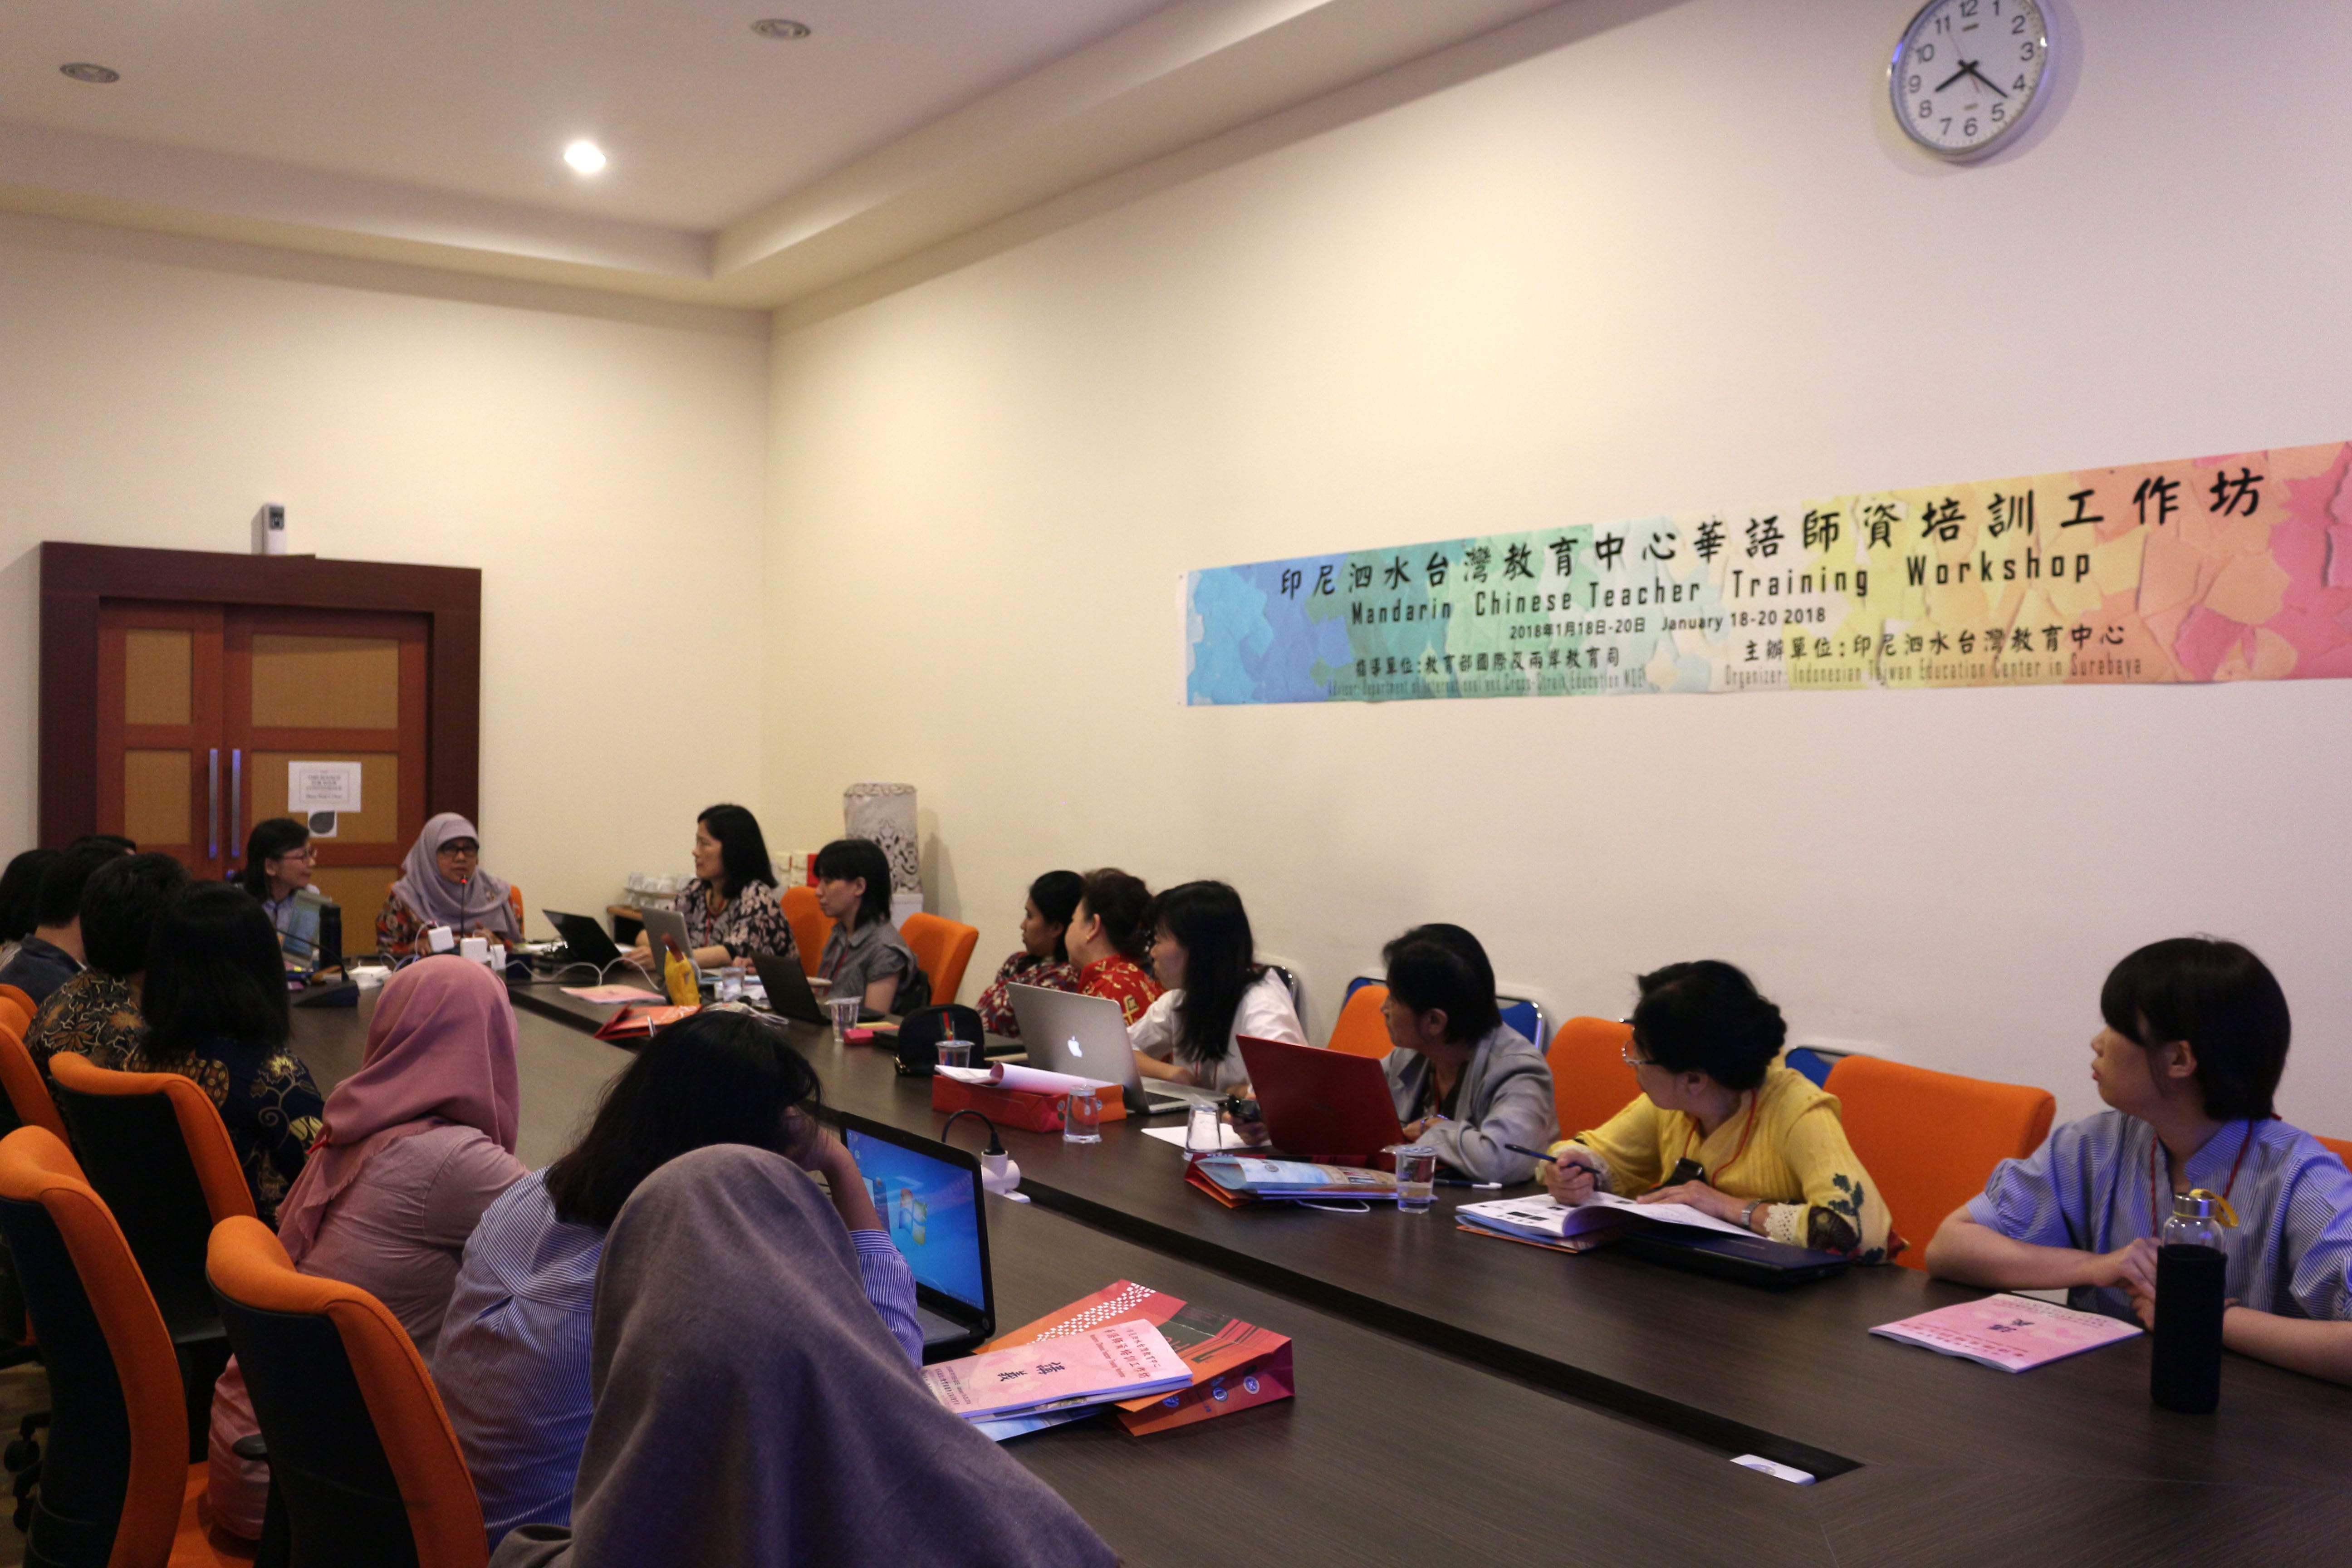 WORKSHOP program Mandarin Chinese Teacher Training Workshop pada Januari 2018 di Ruang 302, Lantai 3, Kantor Manajemen UNAIR. Kali ini agenda kedua digelar di RuanG Sidang Pleno, Lantai 3, Kantor Manajemen Kampus C. (Foto: Feri Fenoria)